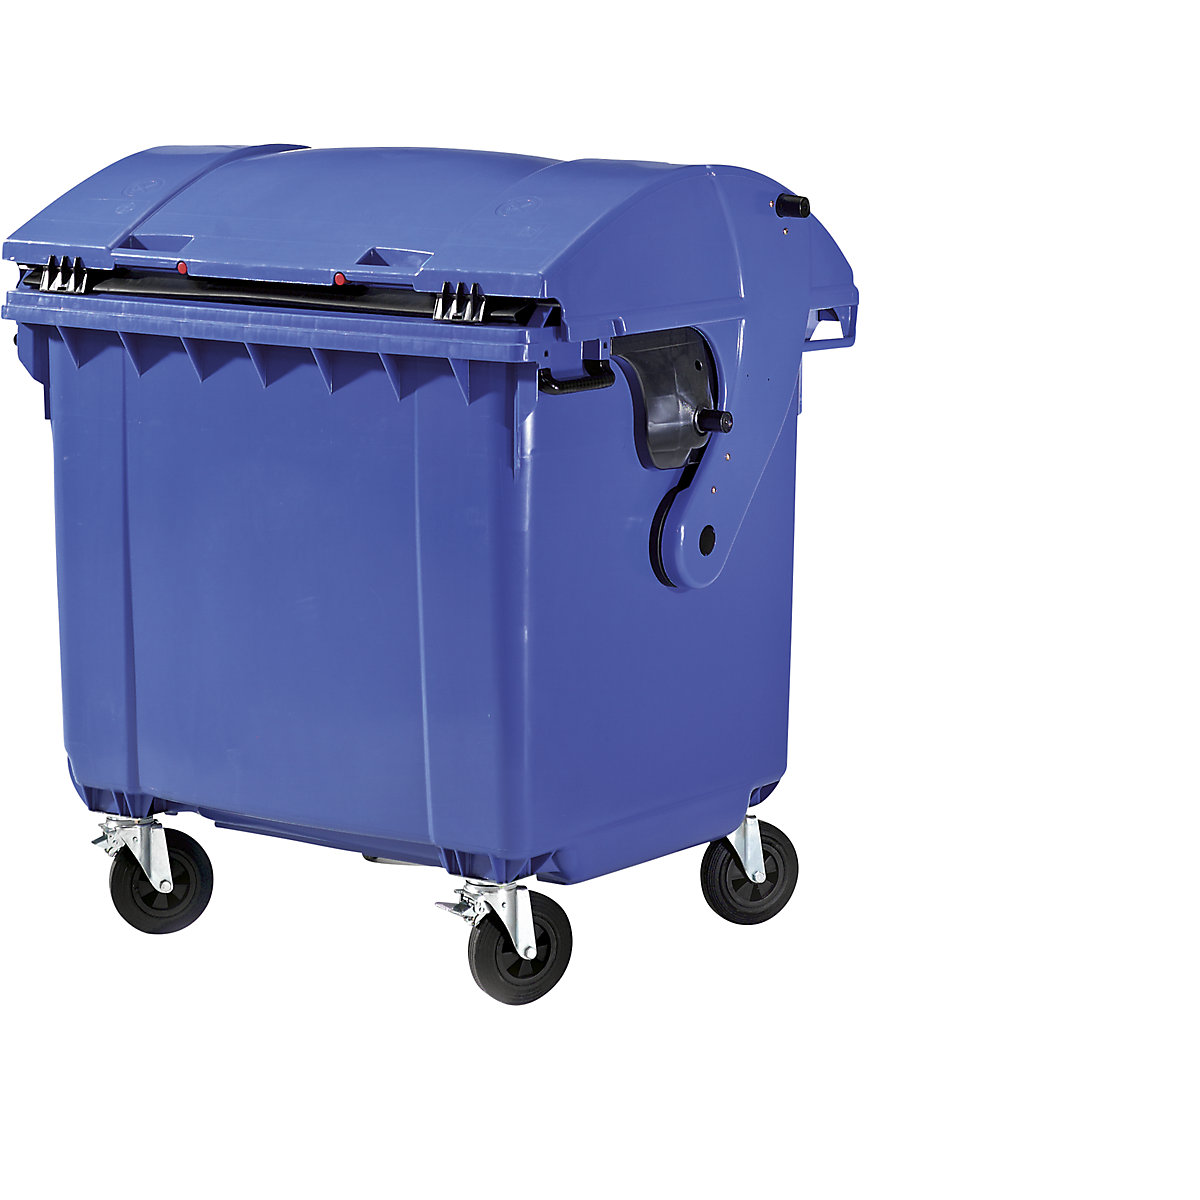 Afvalcontainer van kunststof, DIN EN 840, Inhoud 1100 l, h x b x d = 1360 x 1465 x 1100 mm, schuifdeksel, beveiliging voor kinderen, blauw